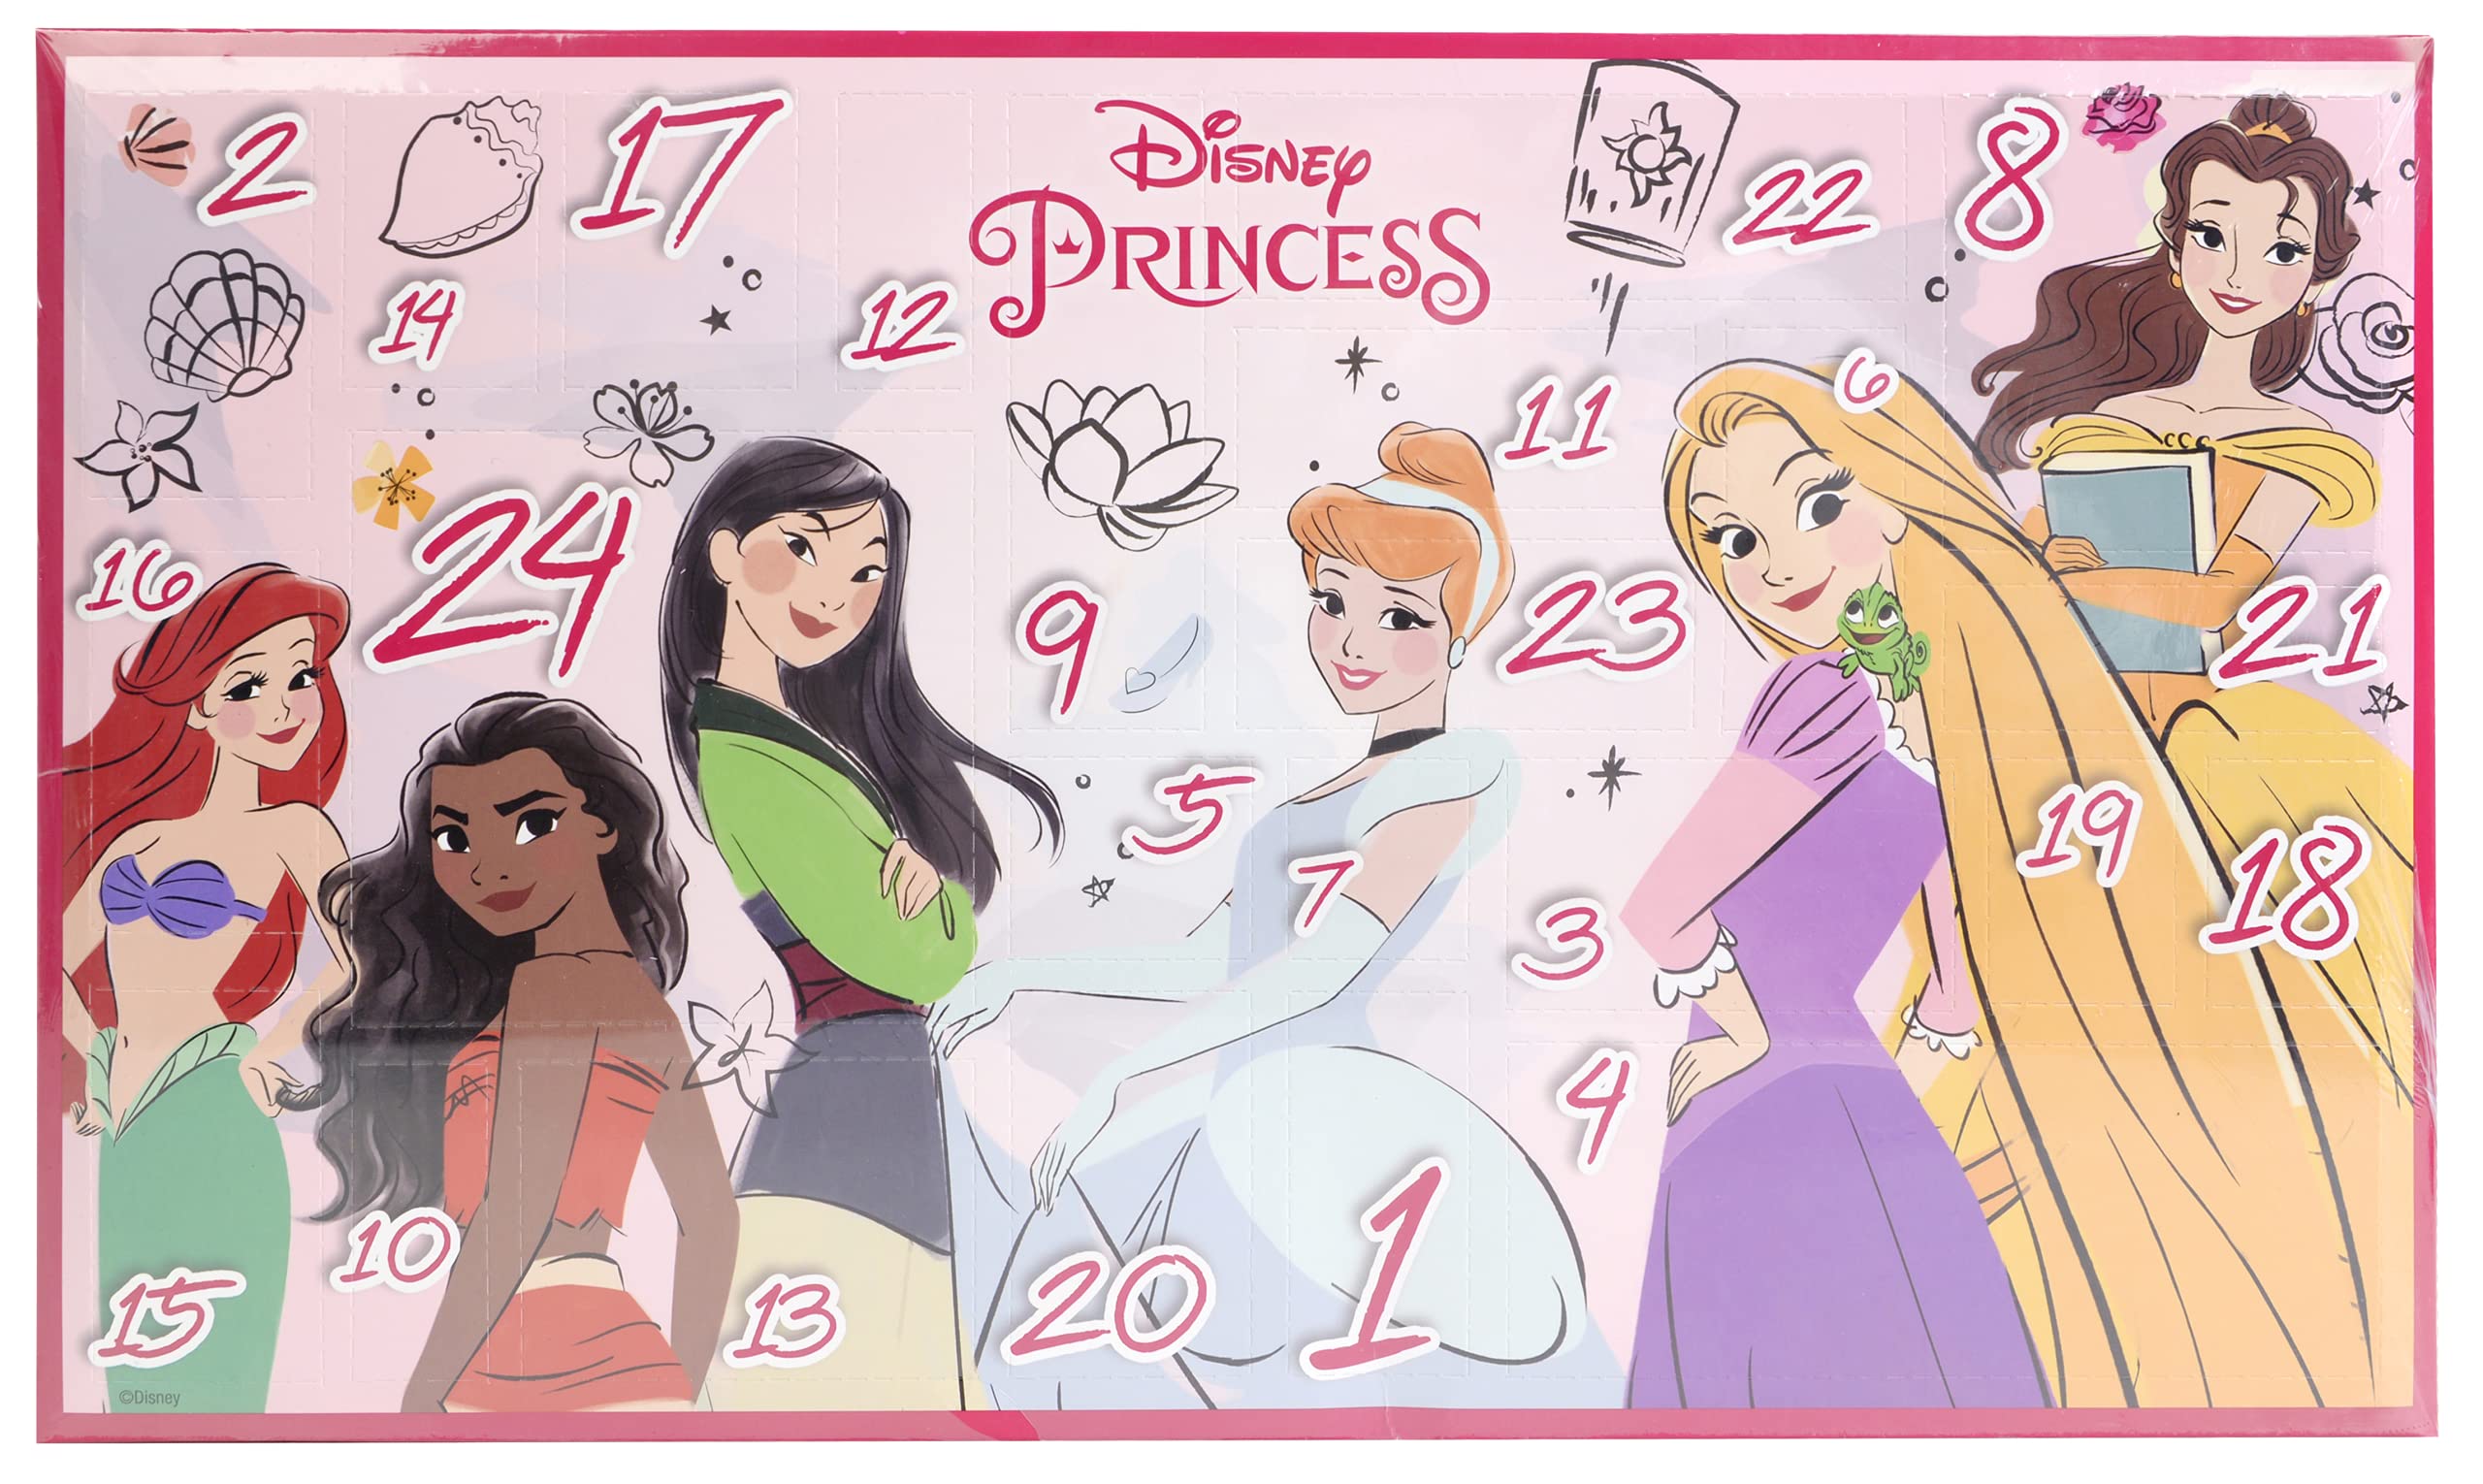 Markwins Princess 24 Days of Adventure Advent Calendar, Adventskalender mit Prinzessinnen Beauty-Produkten, Make-up Set für Schminkspaß, buntem Zubehör, Spielzeug und Geschenke für Kinder